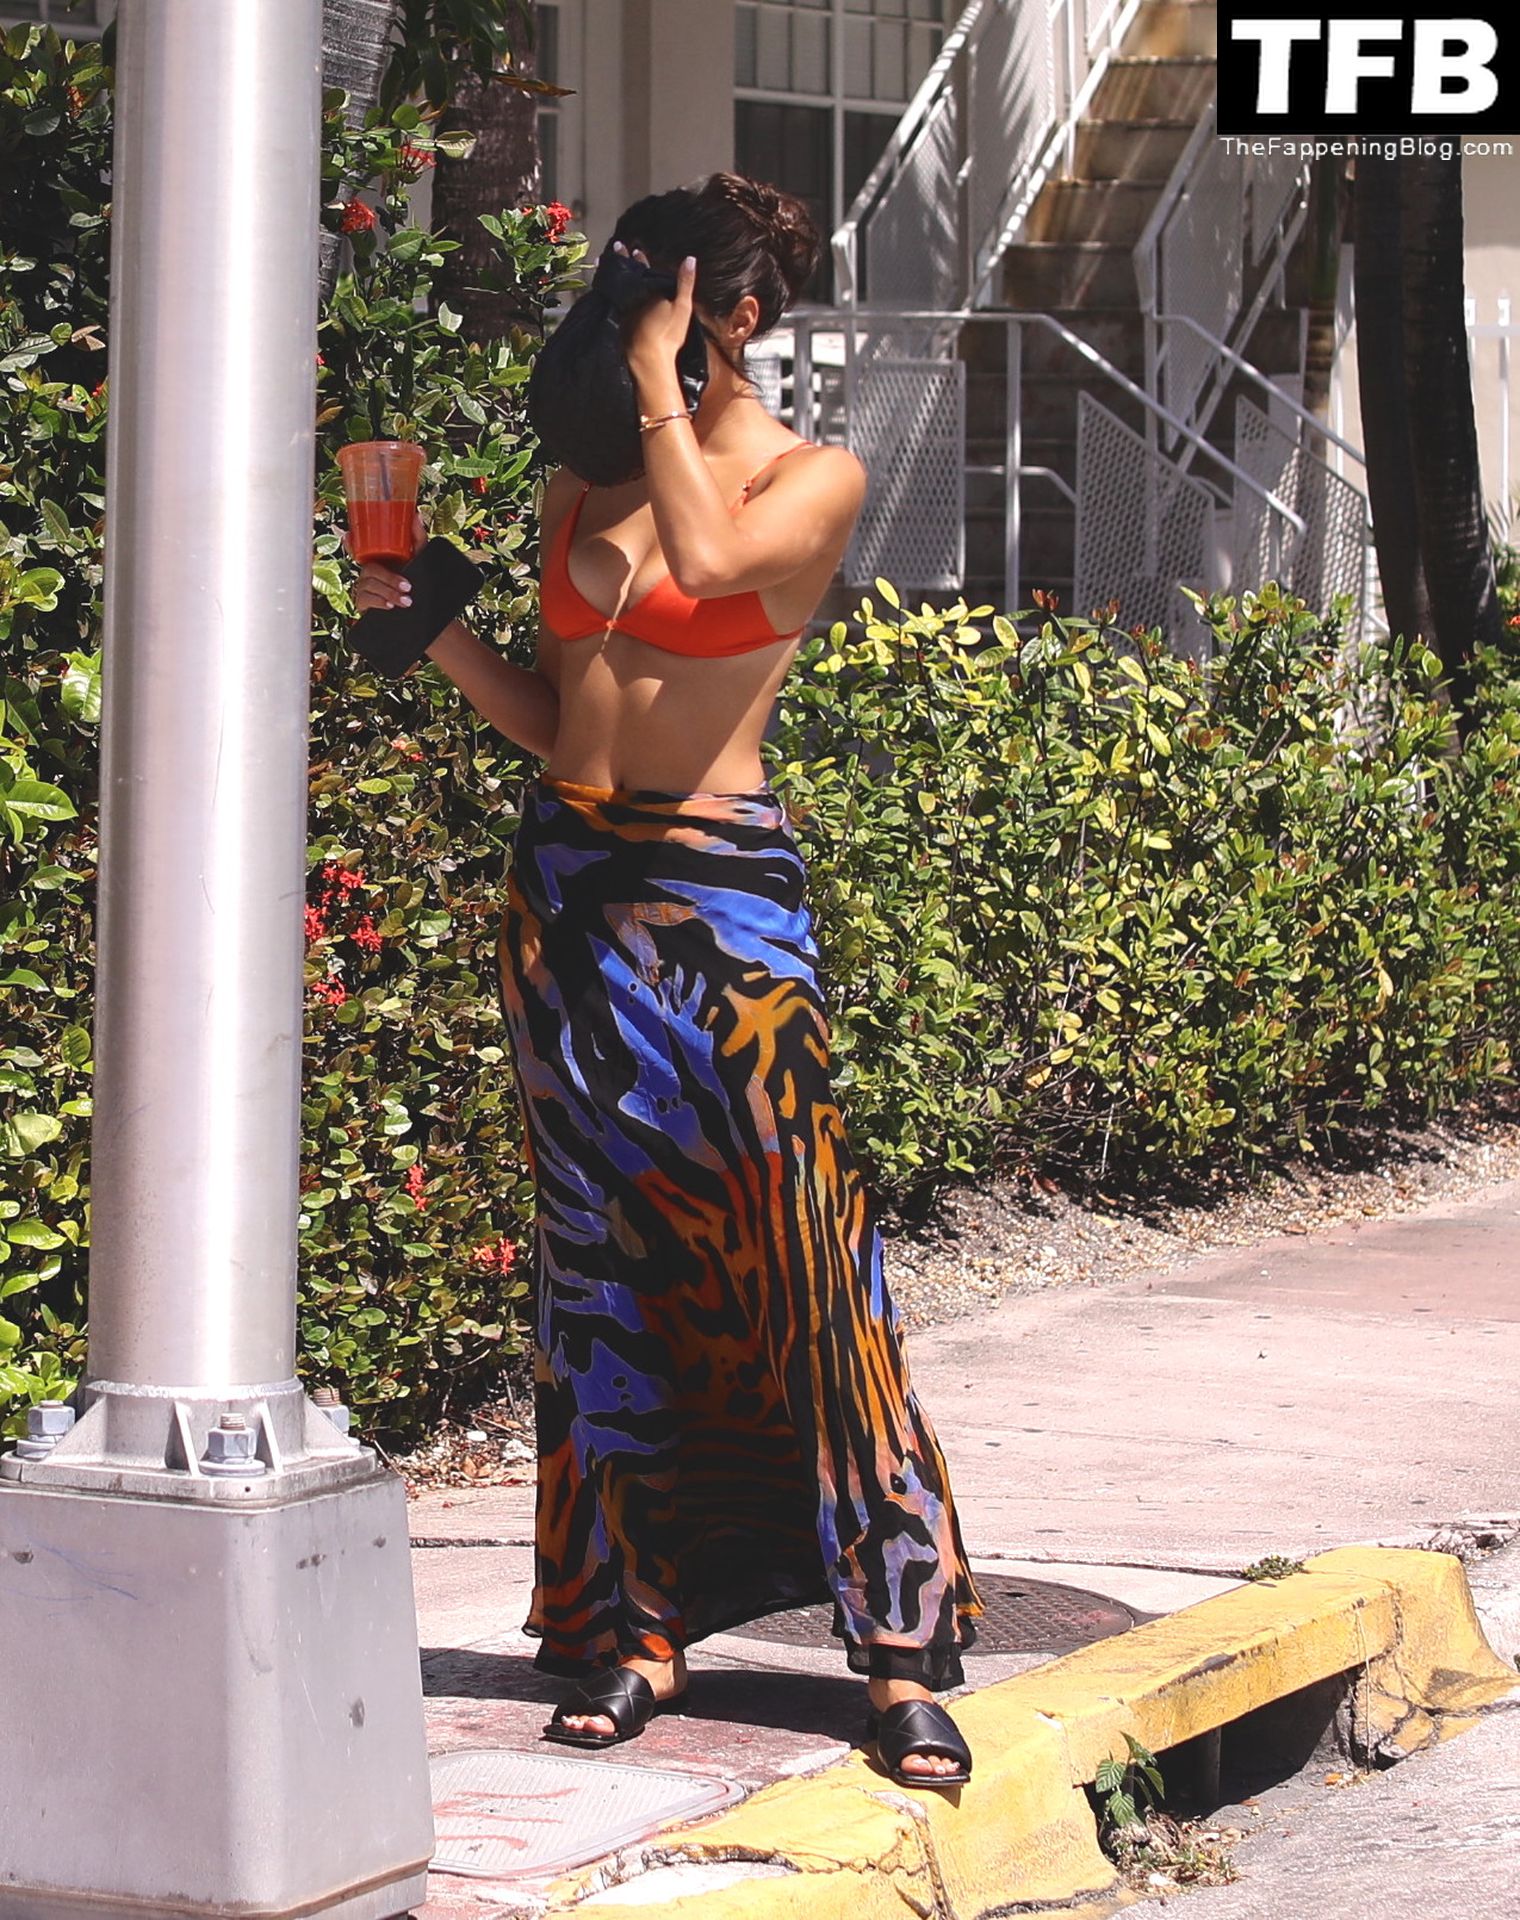 Tao Wickrath Stuns in Small Orange Bikini on the Beach in Miami (34 Photos)